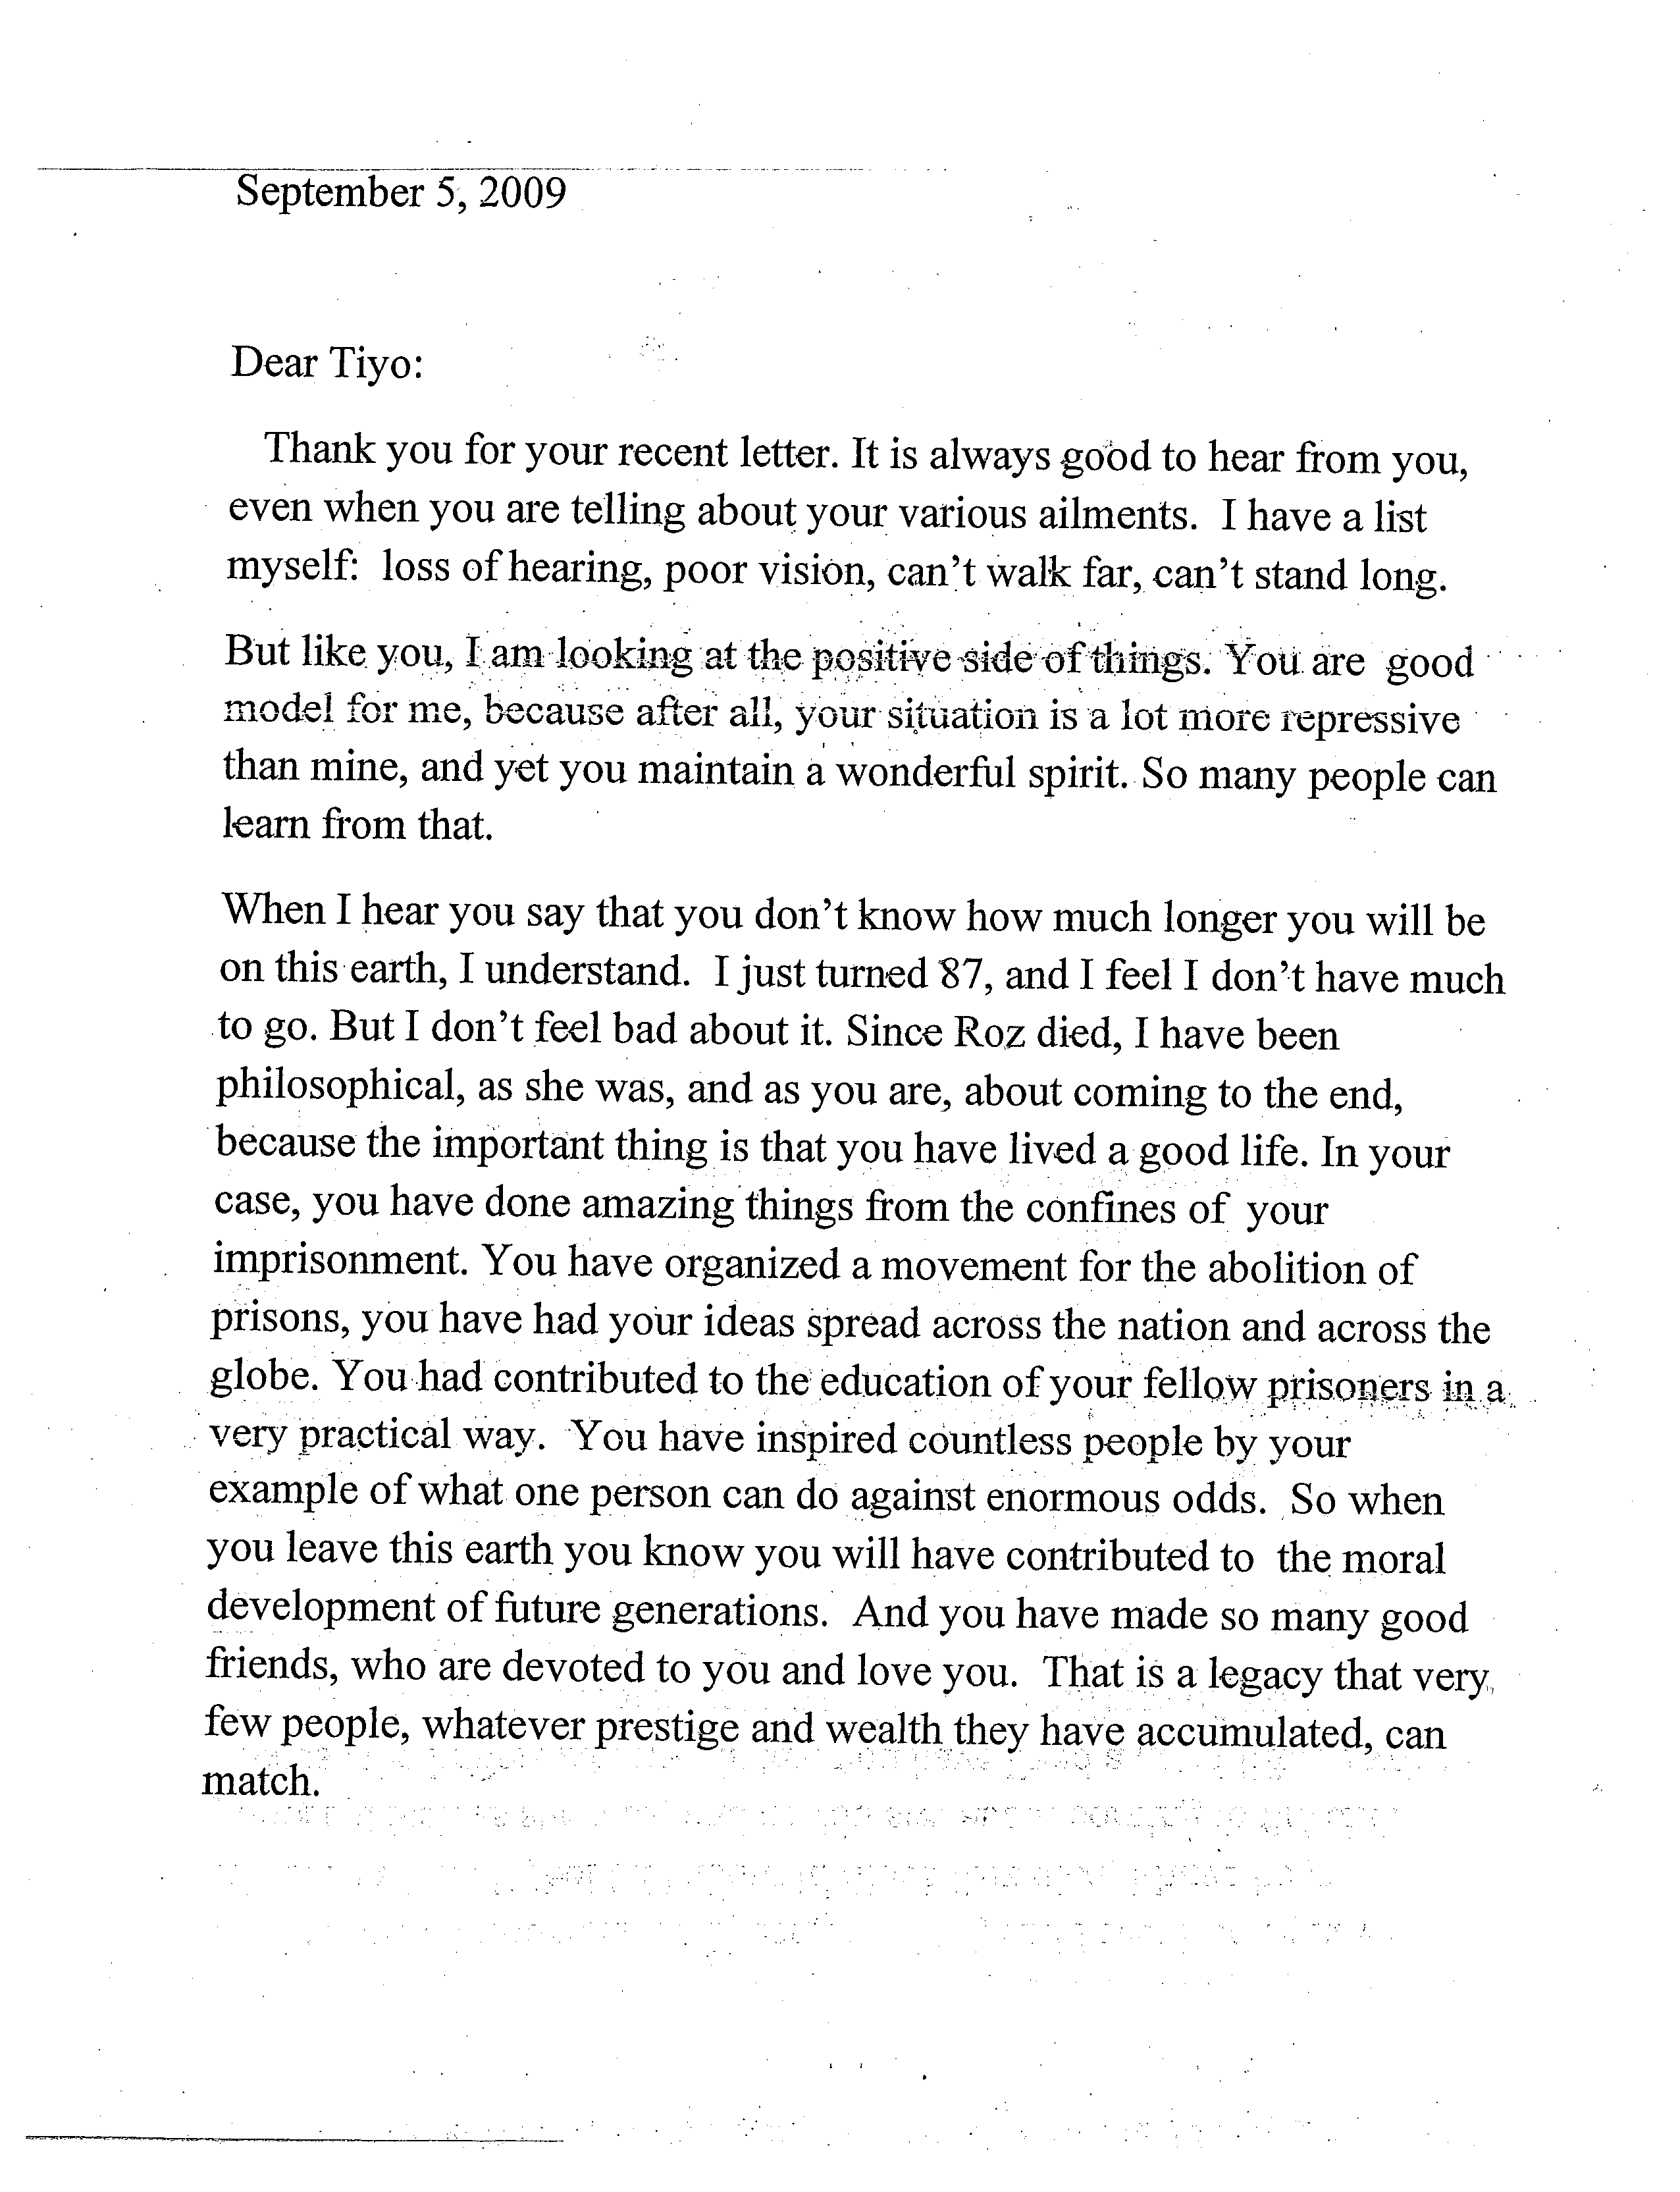 Letter to Tiyo Attallah Salah-El (Sept. 2009) - P1